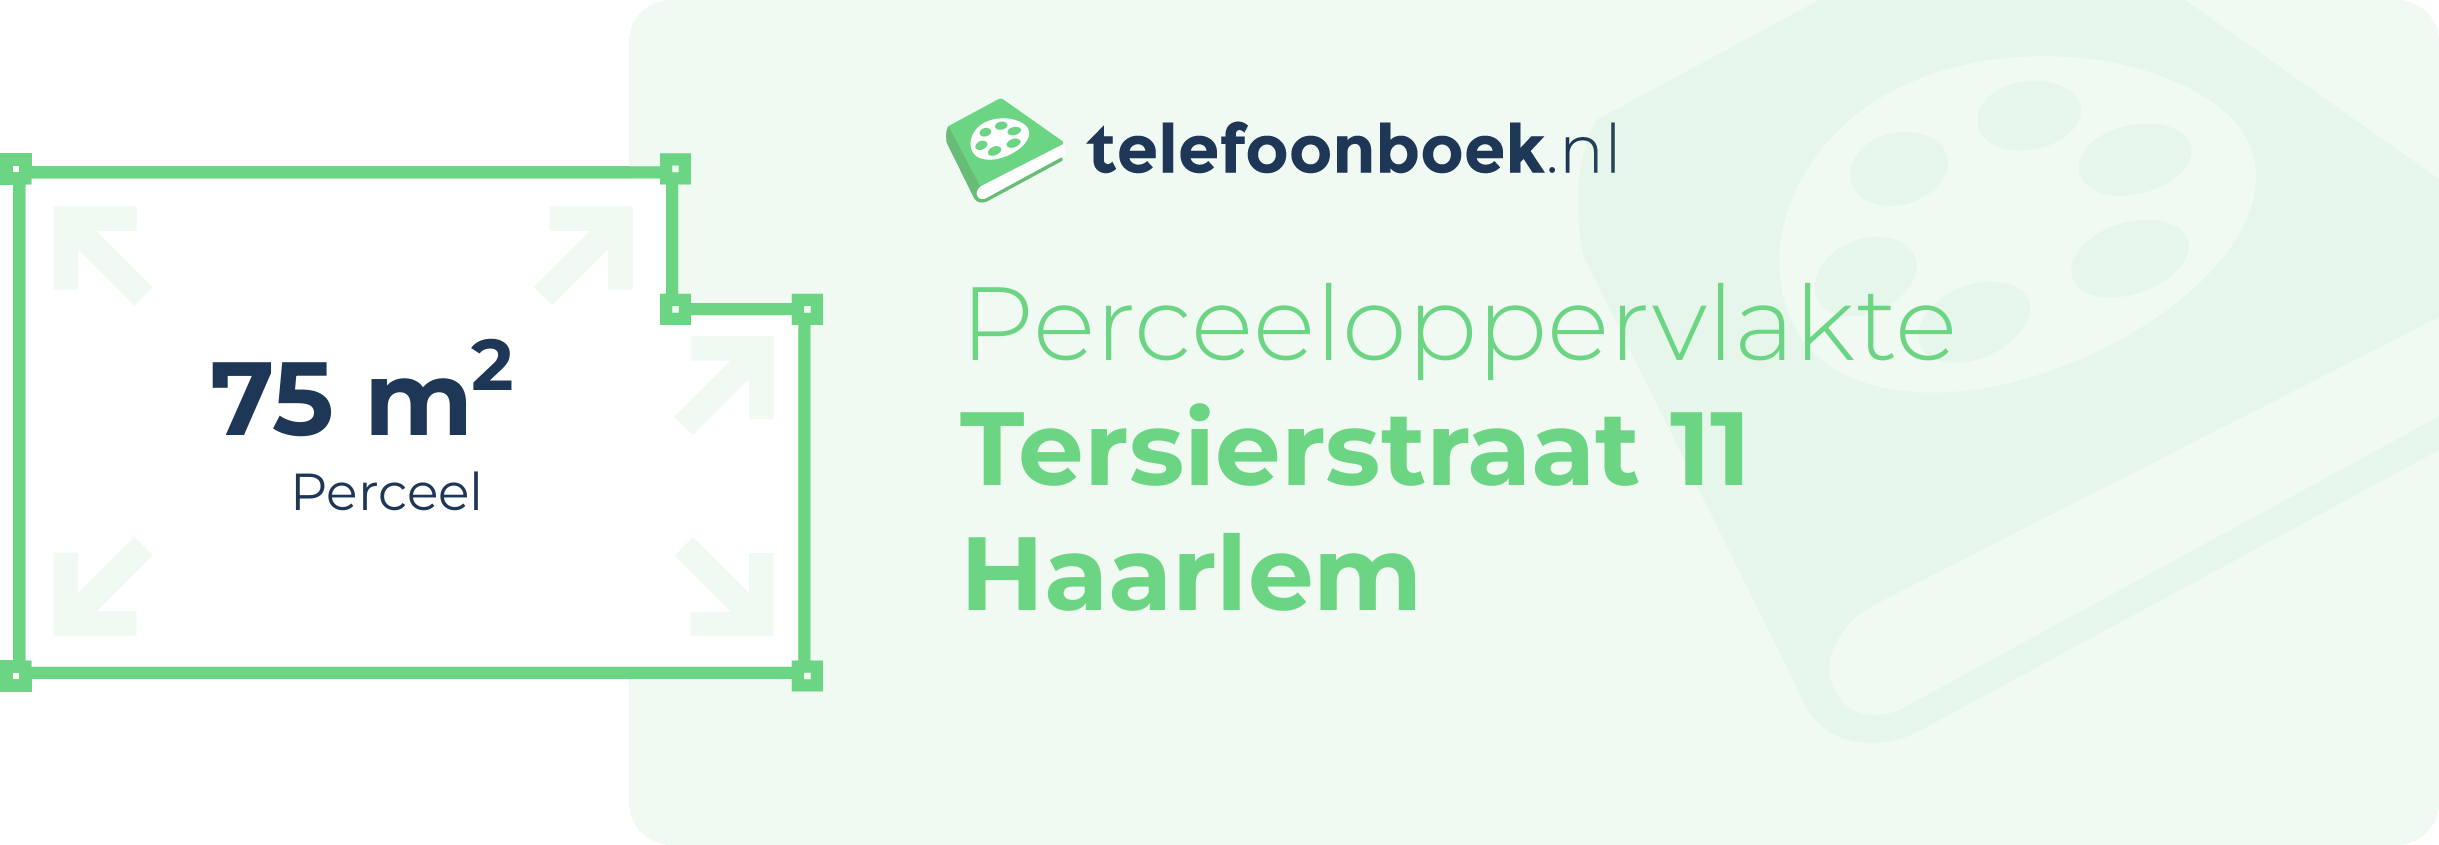 Perceeloppervlakte Tersierstraat 11 Haarlem